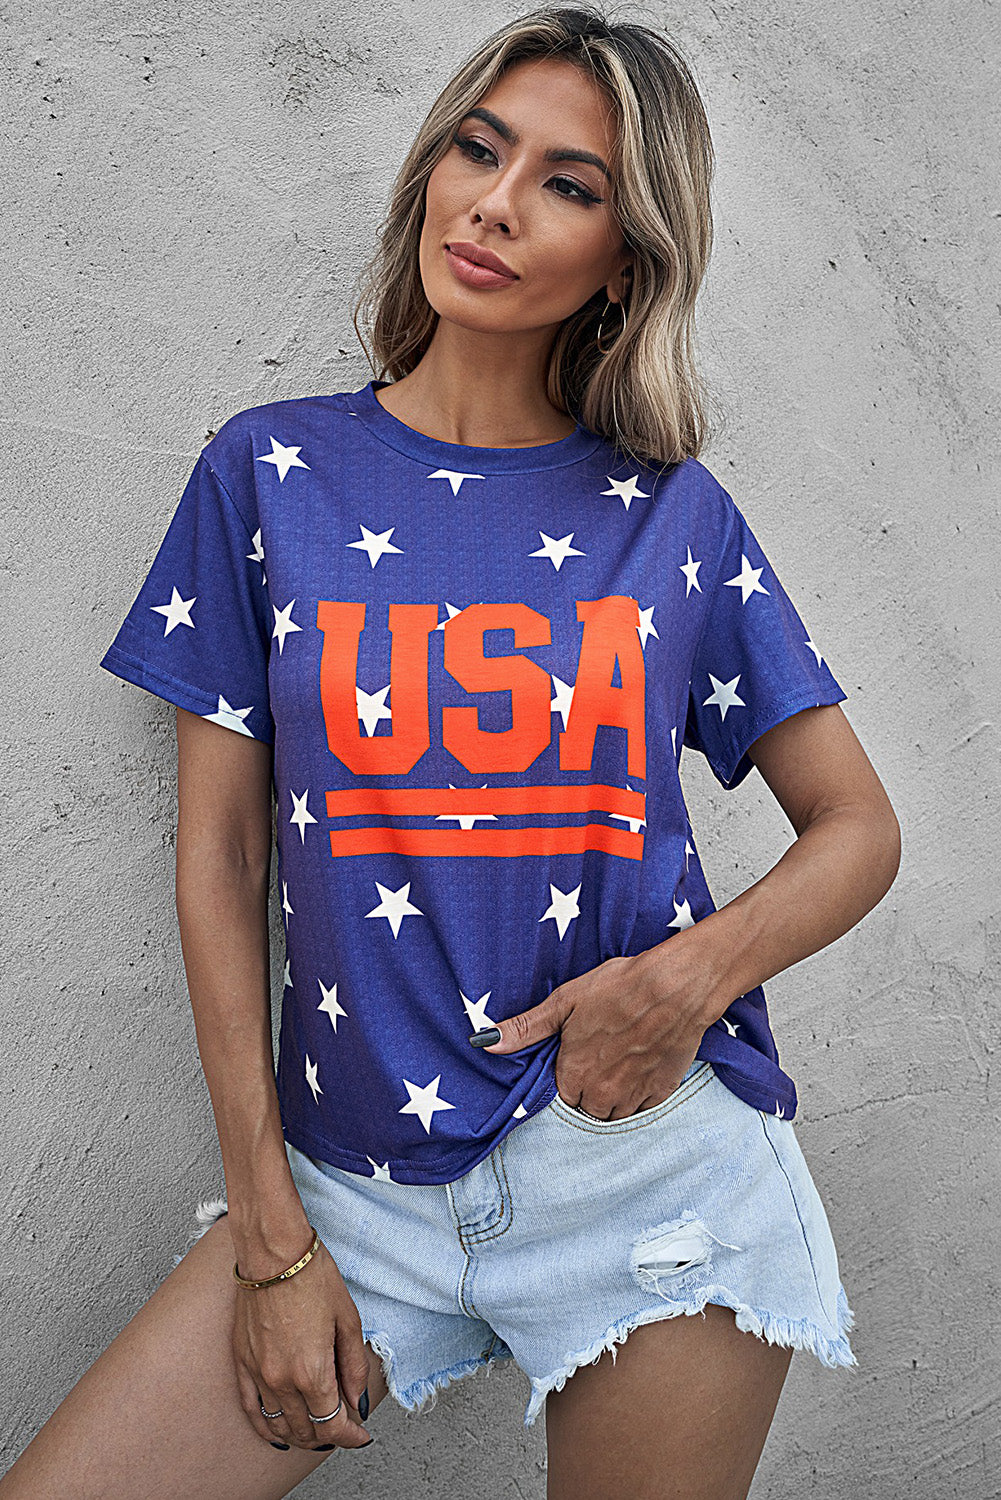 USA Star Print Round Neck T-Shirt Sunset and Swim Light Indigo S 